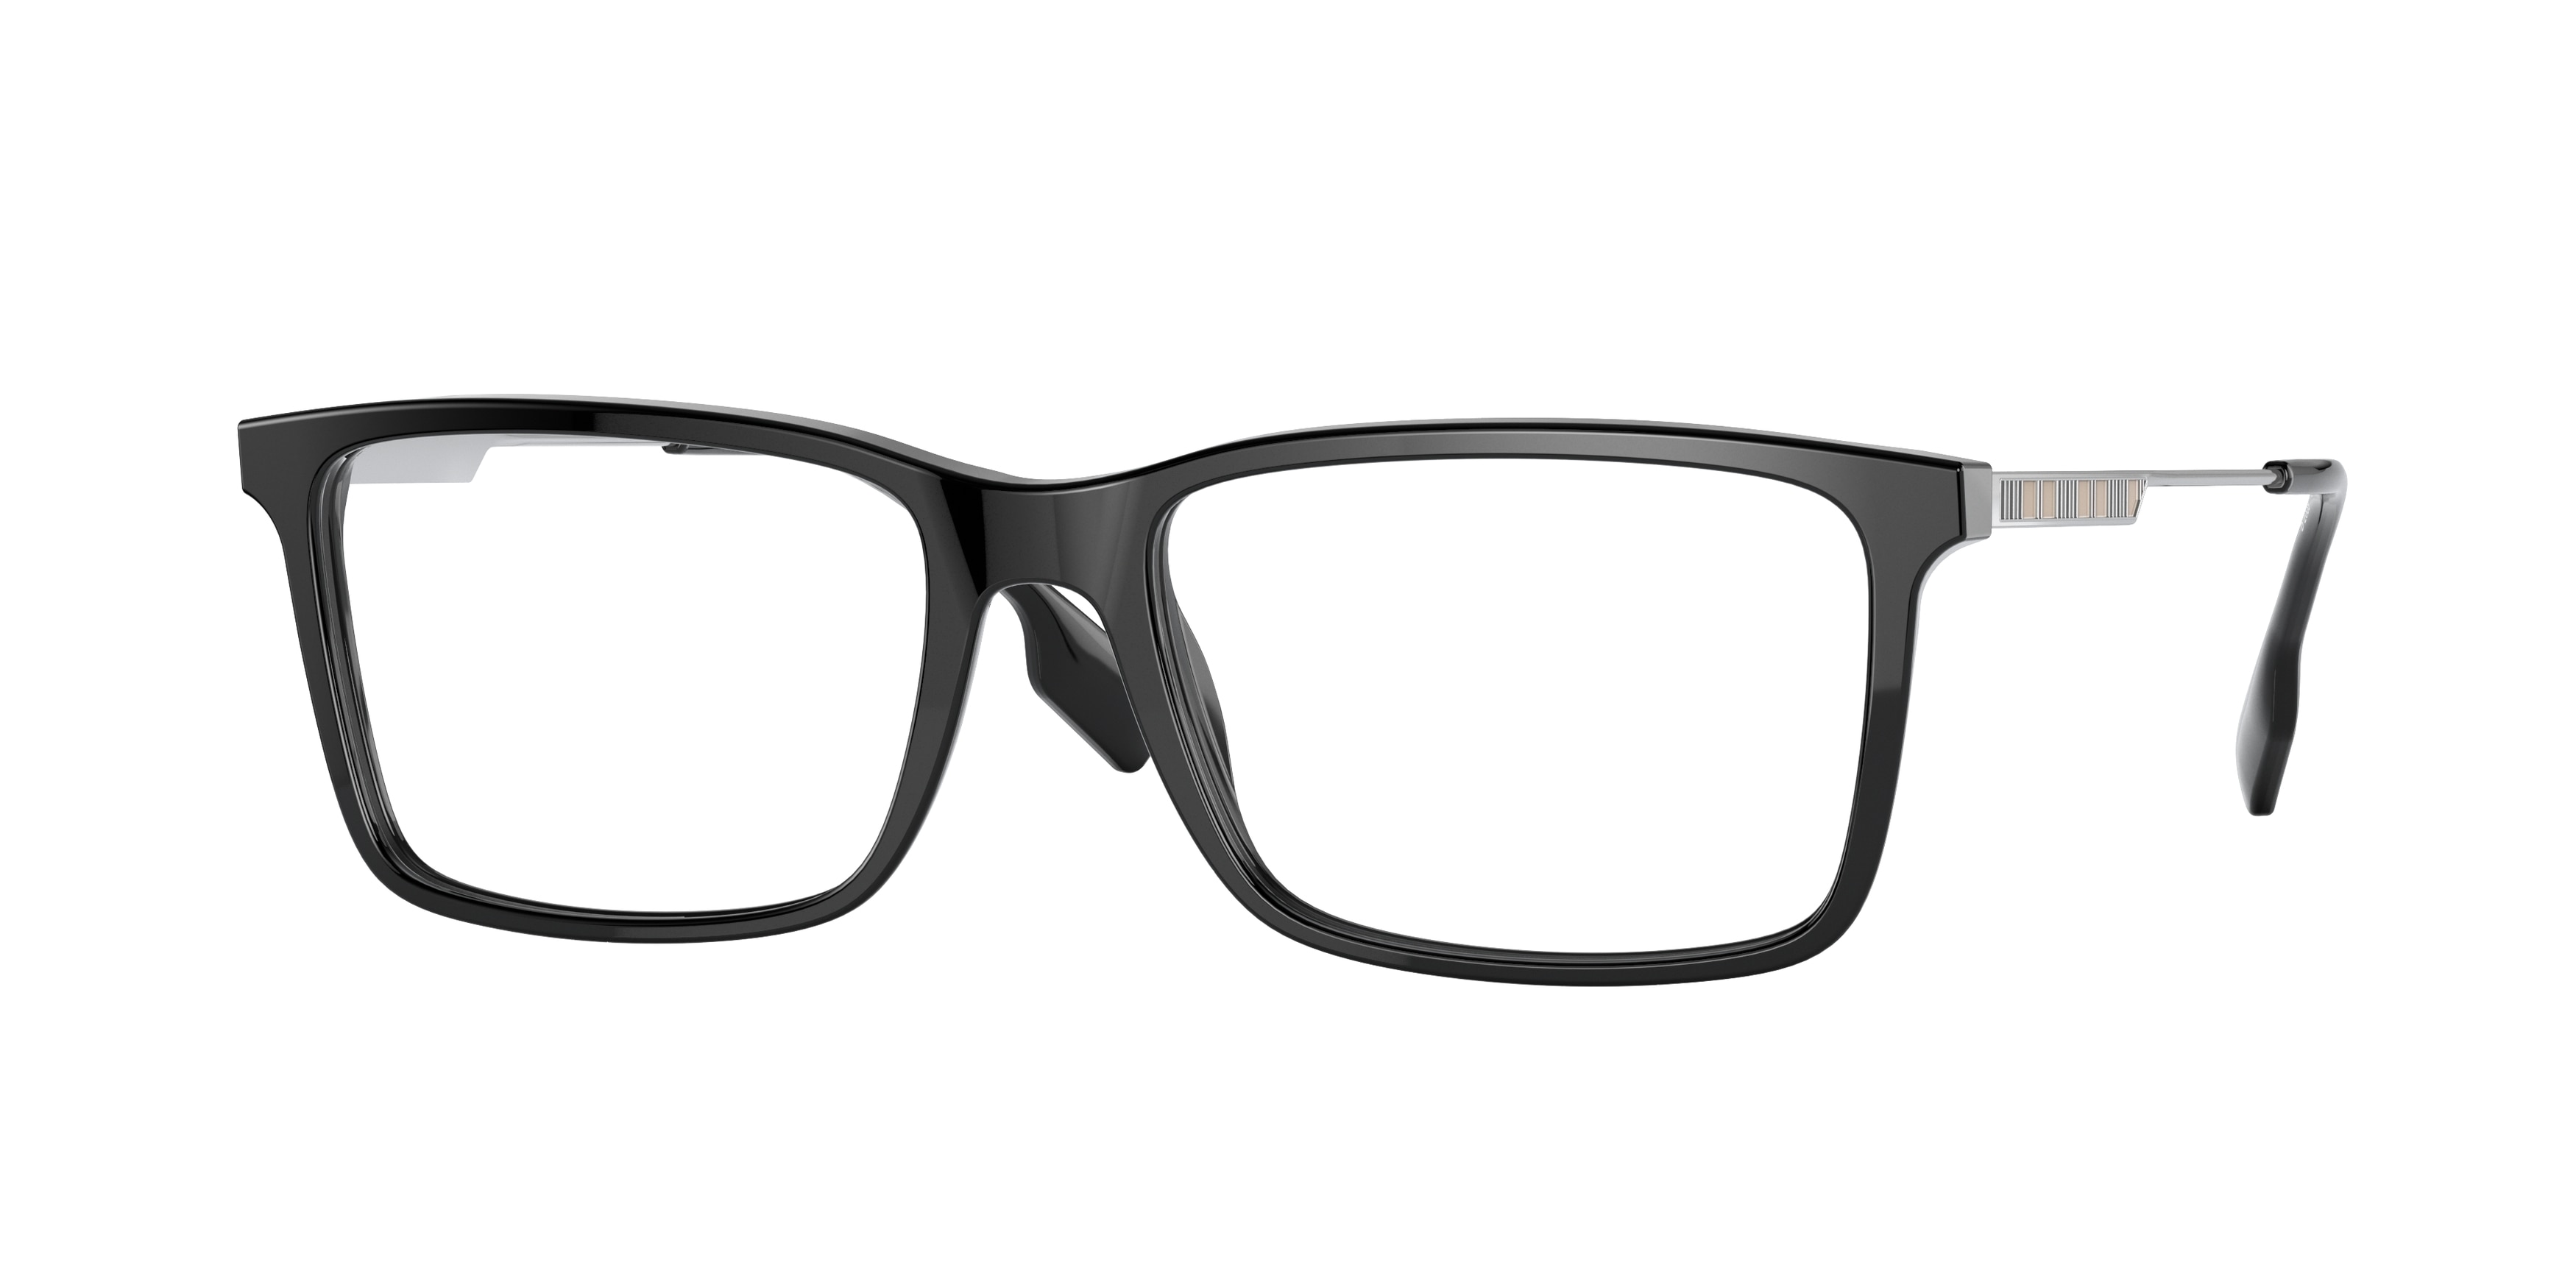 Men's Eyeglasses Frames Online - Replacement Glasses Frames for Men